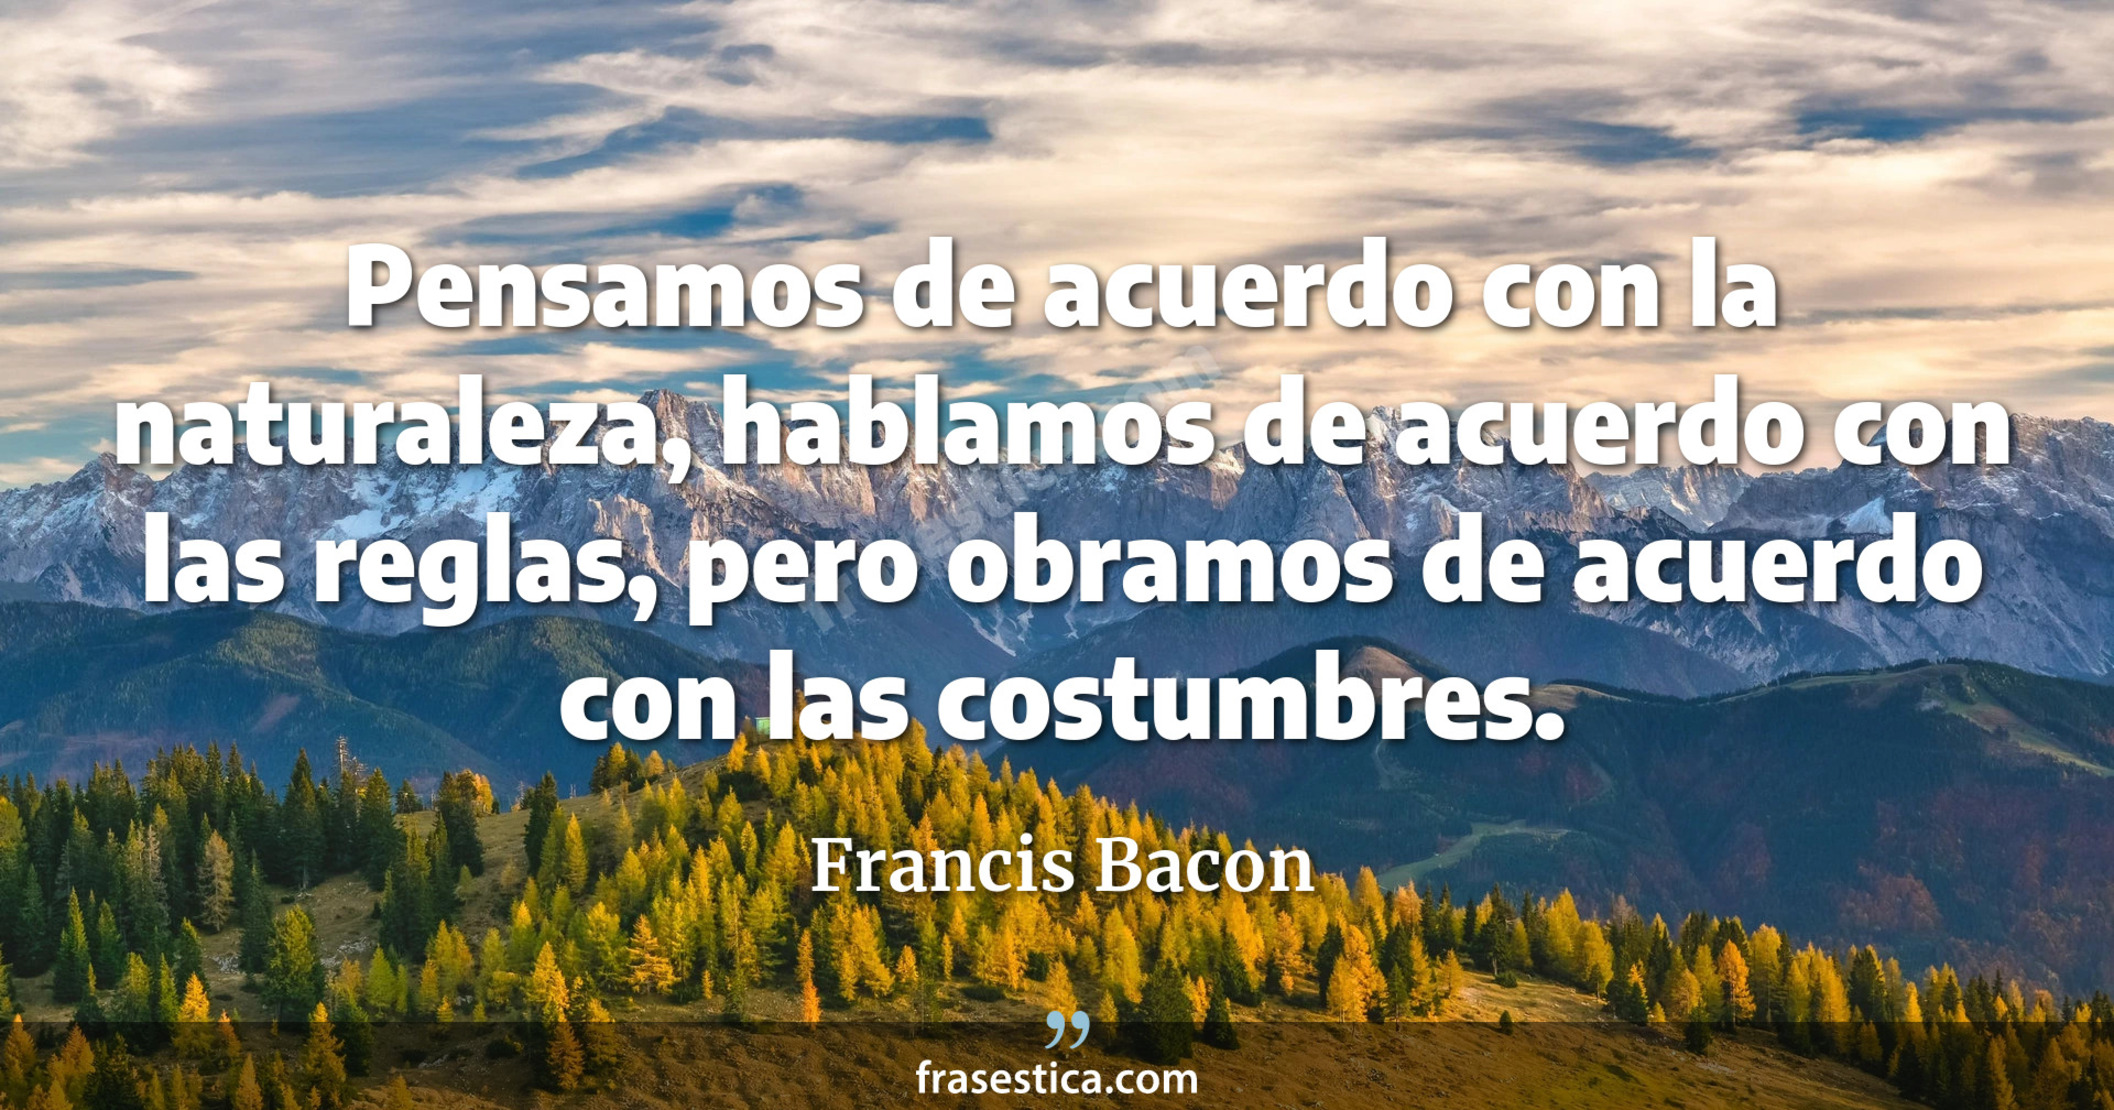 Pensamos de acuerdo con la naturaleza, hablamos de acuerdo con las reglas, pero obramos de acuerdo con las costumbres. - Francis Bacon